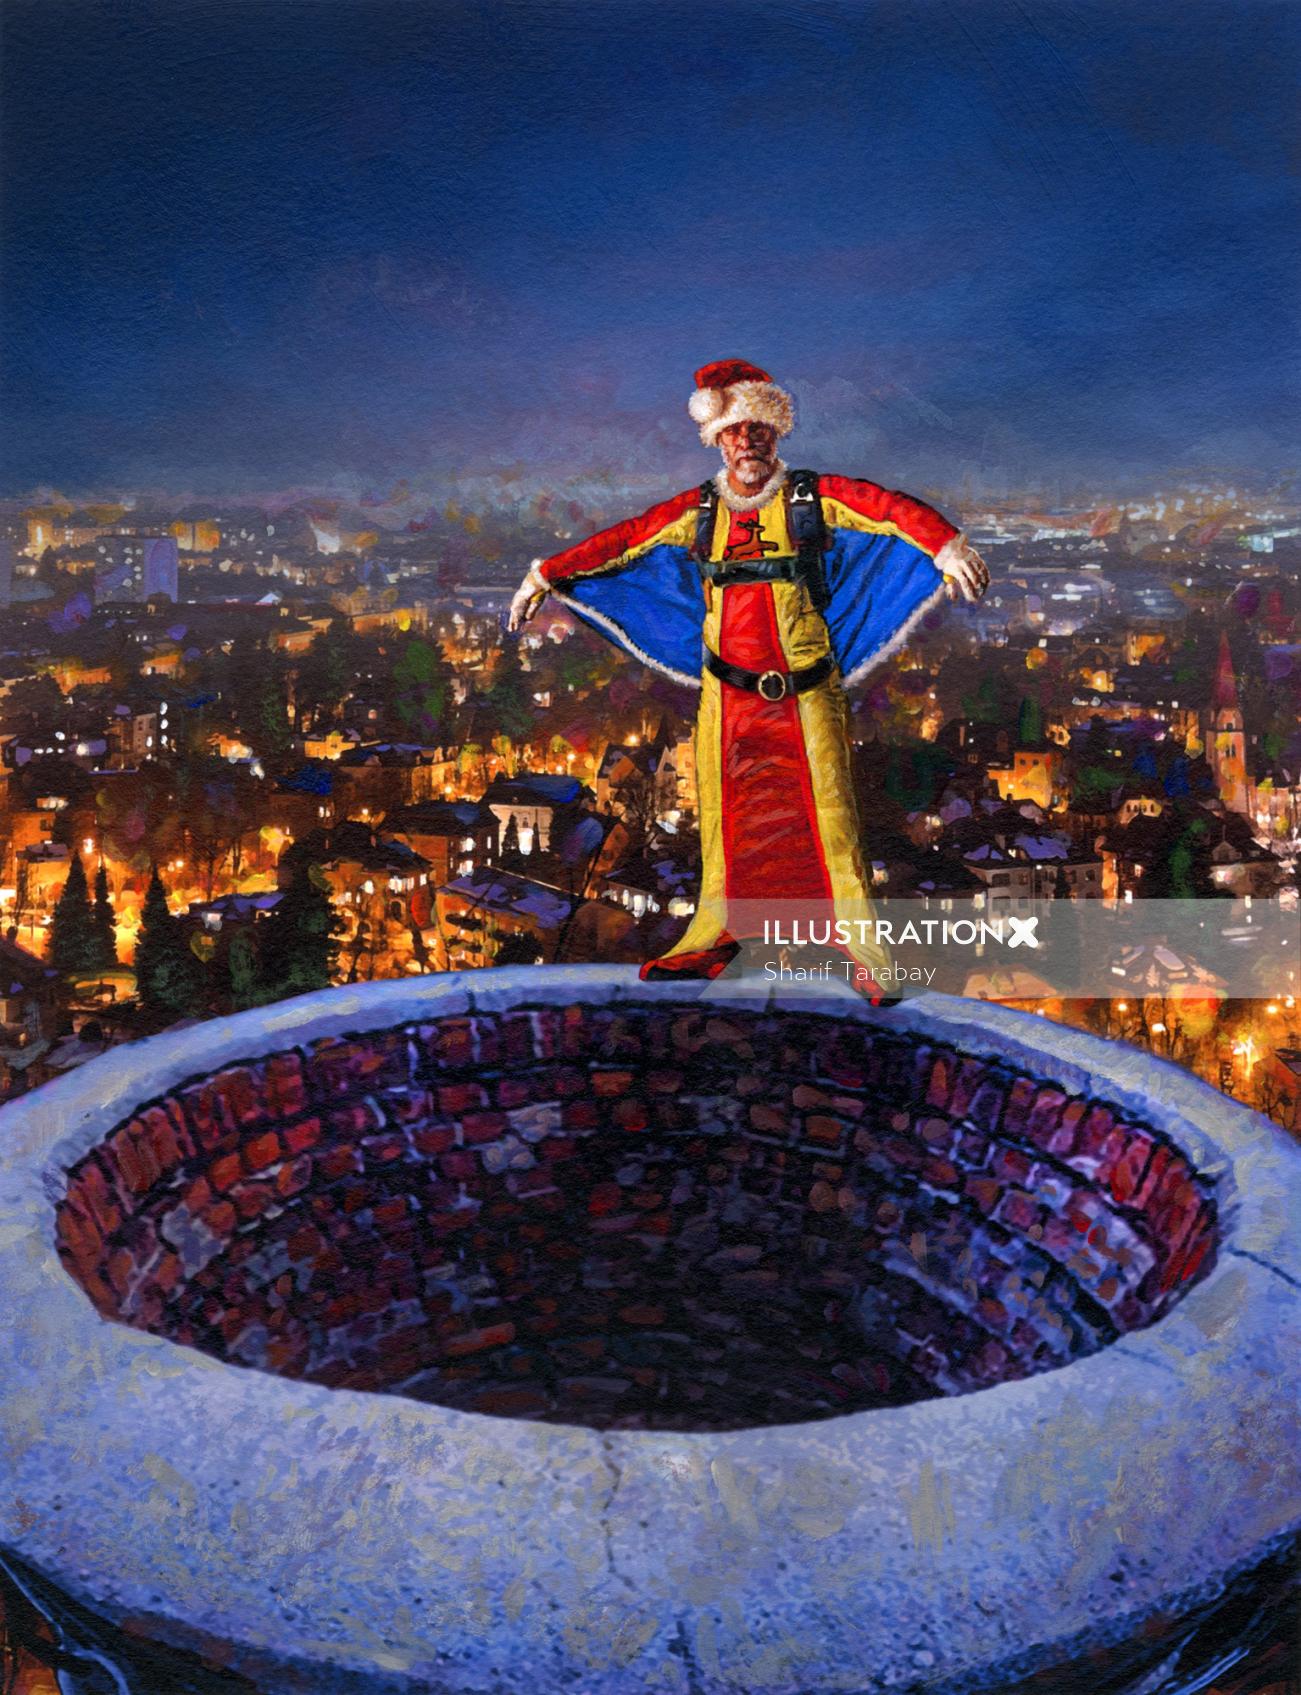 Ilustración del salto de la chimenea de Santa